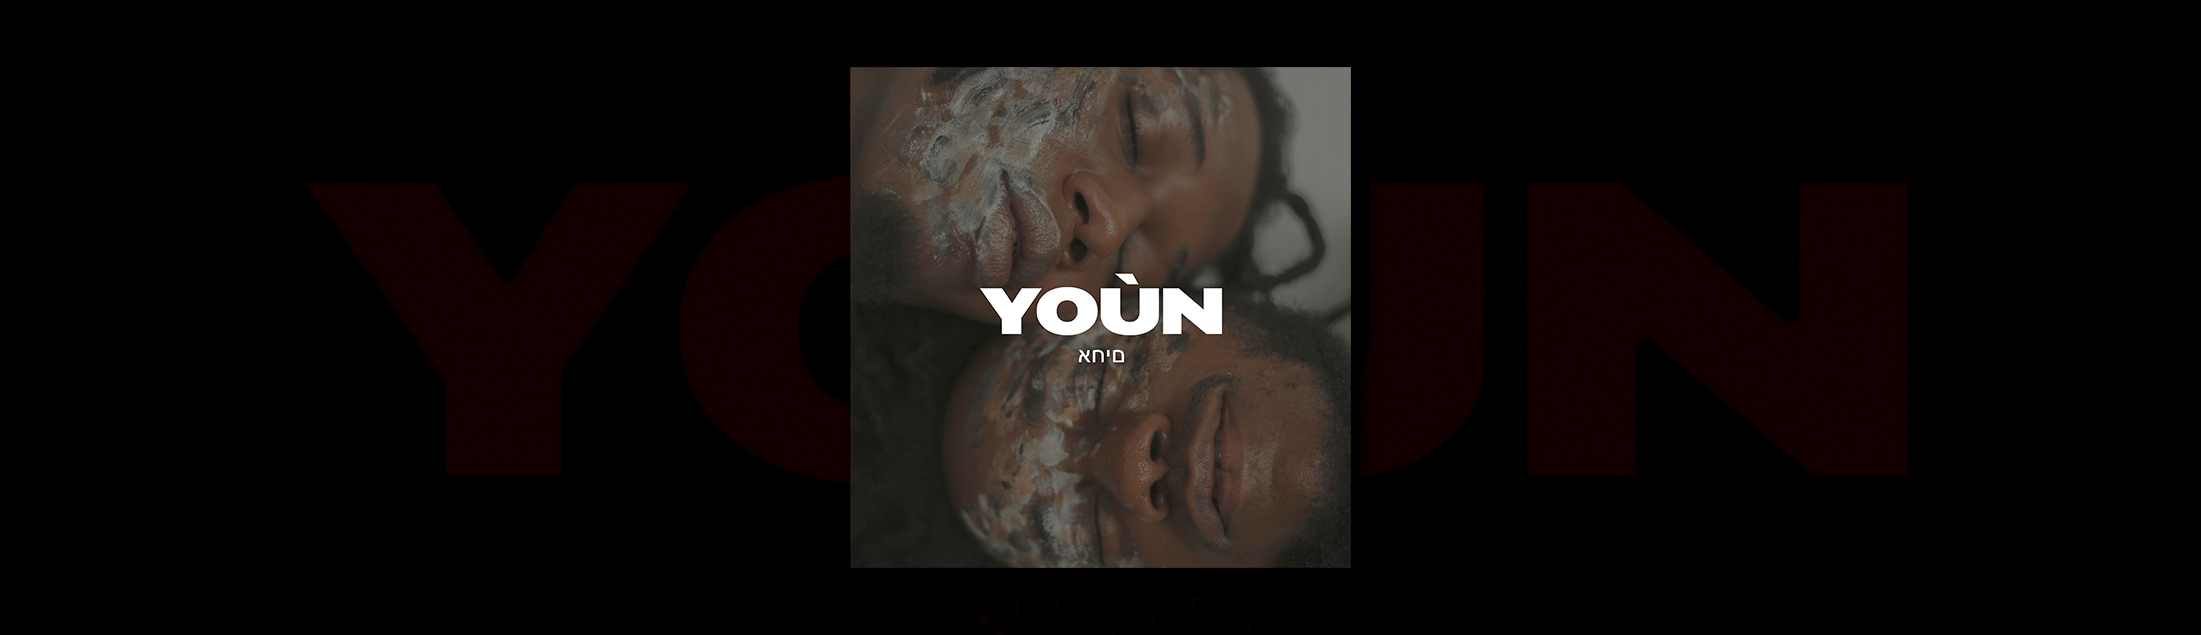 Yoún lança clipe unindo R&B, rap, jazz, soul, trap e os ritmos urbanos cariocas